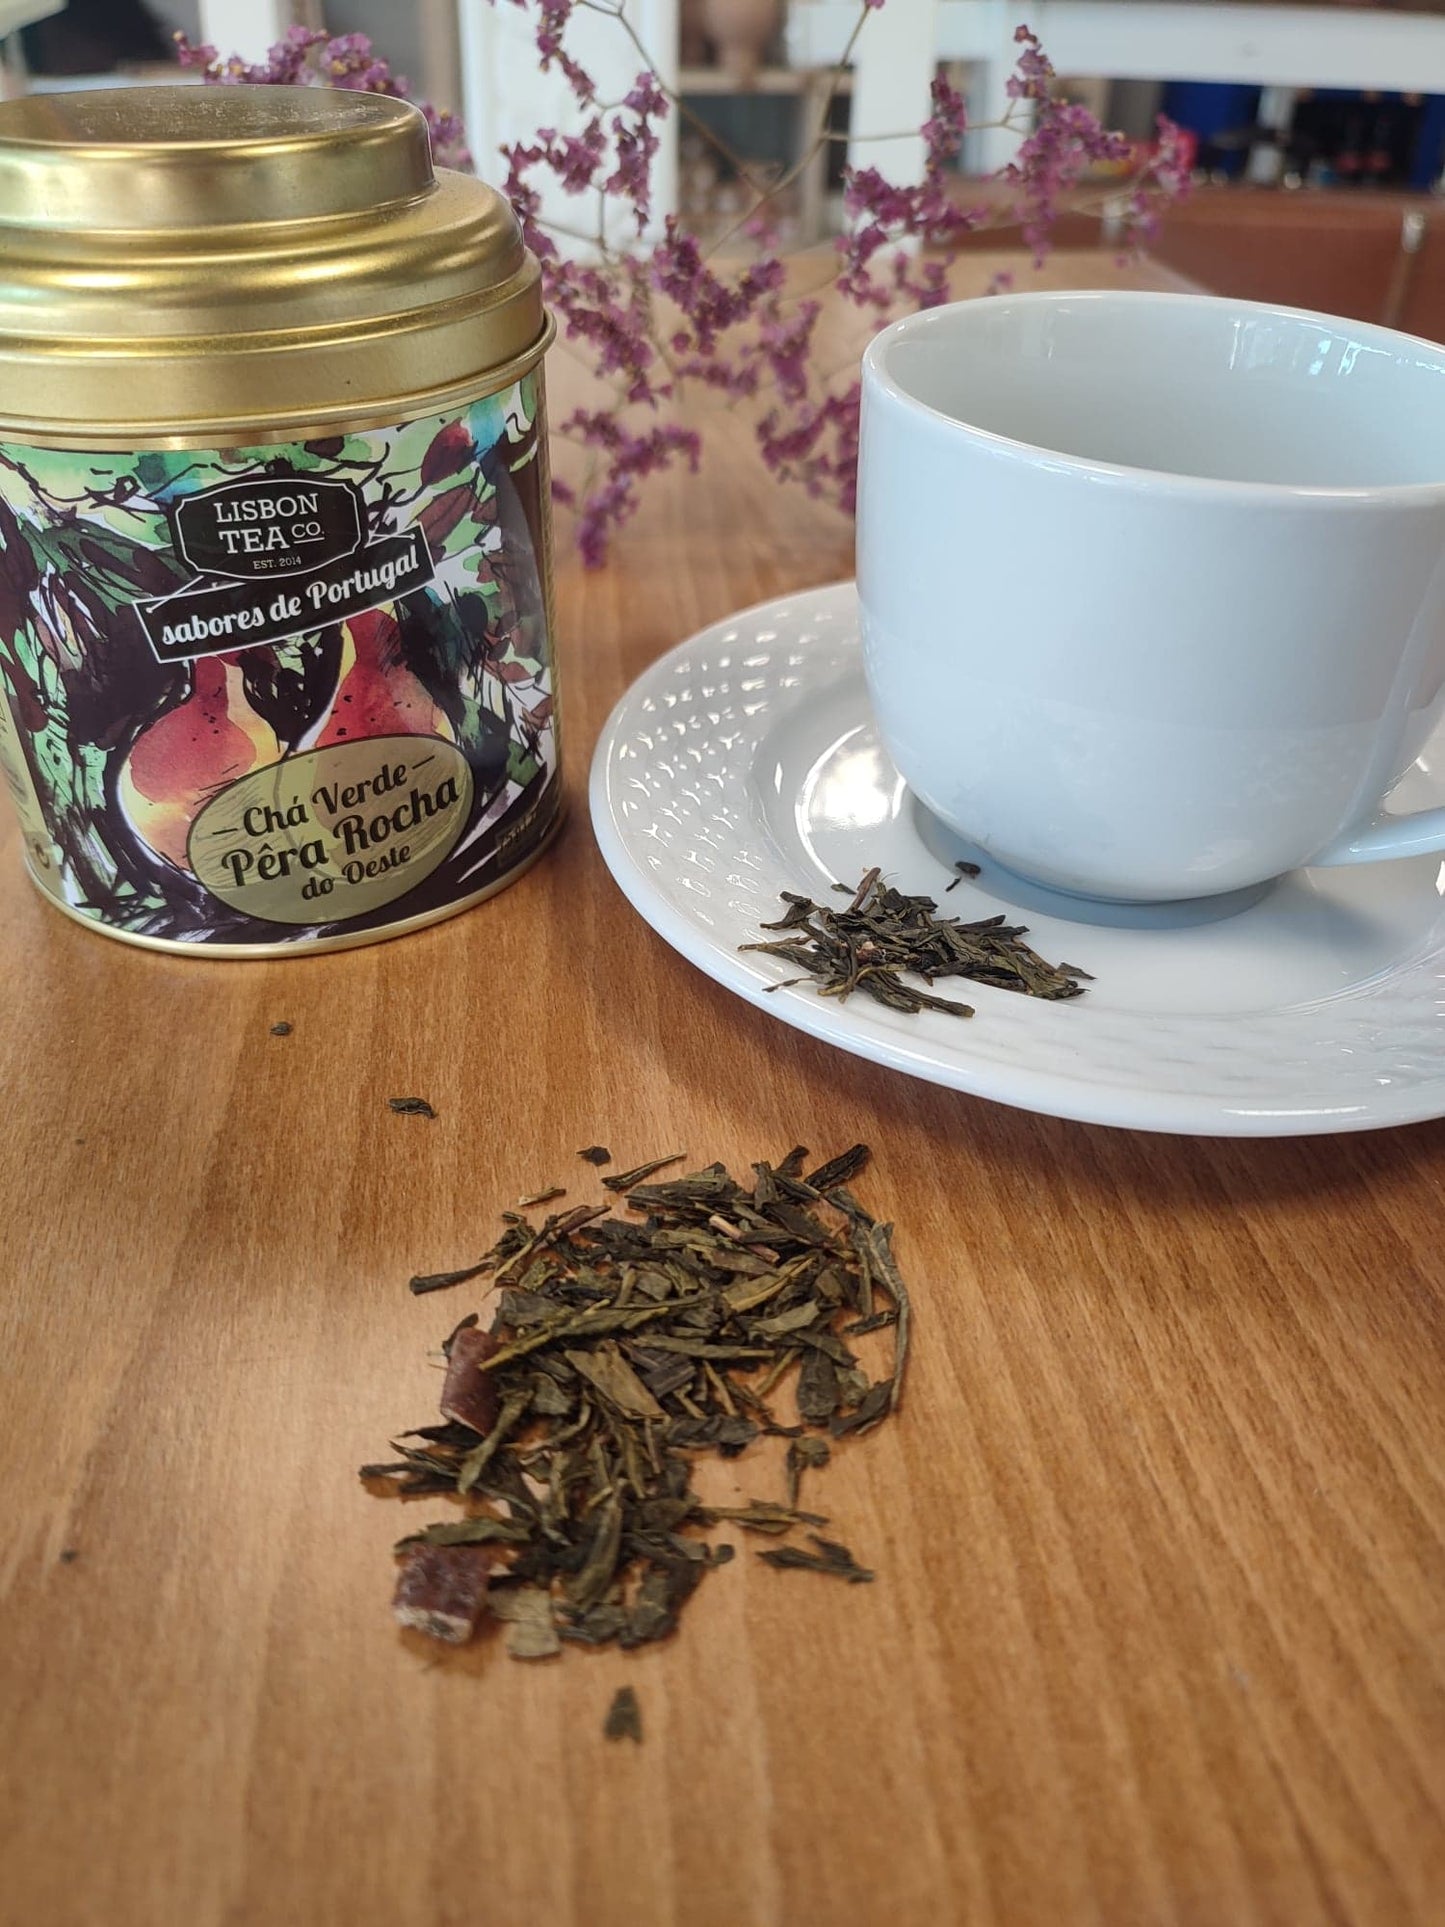 thé vert boisson poire rocha saveurs portugal lisbon tea co saudade concept store cherbourg normandie